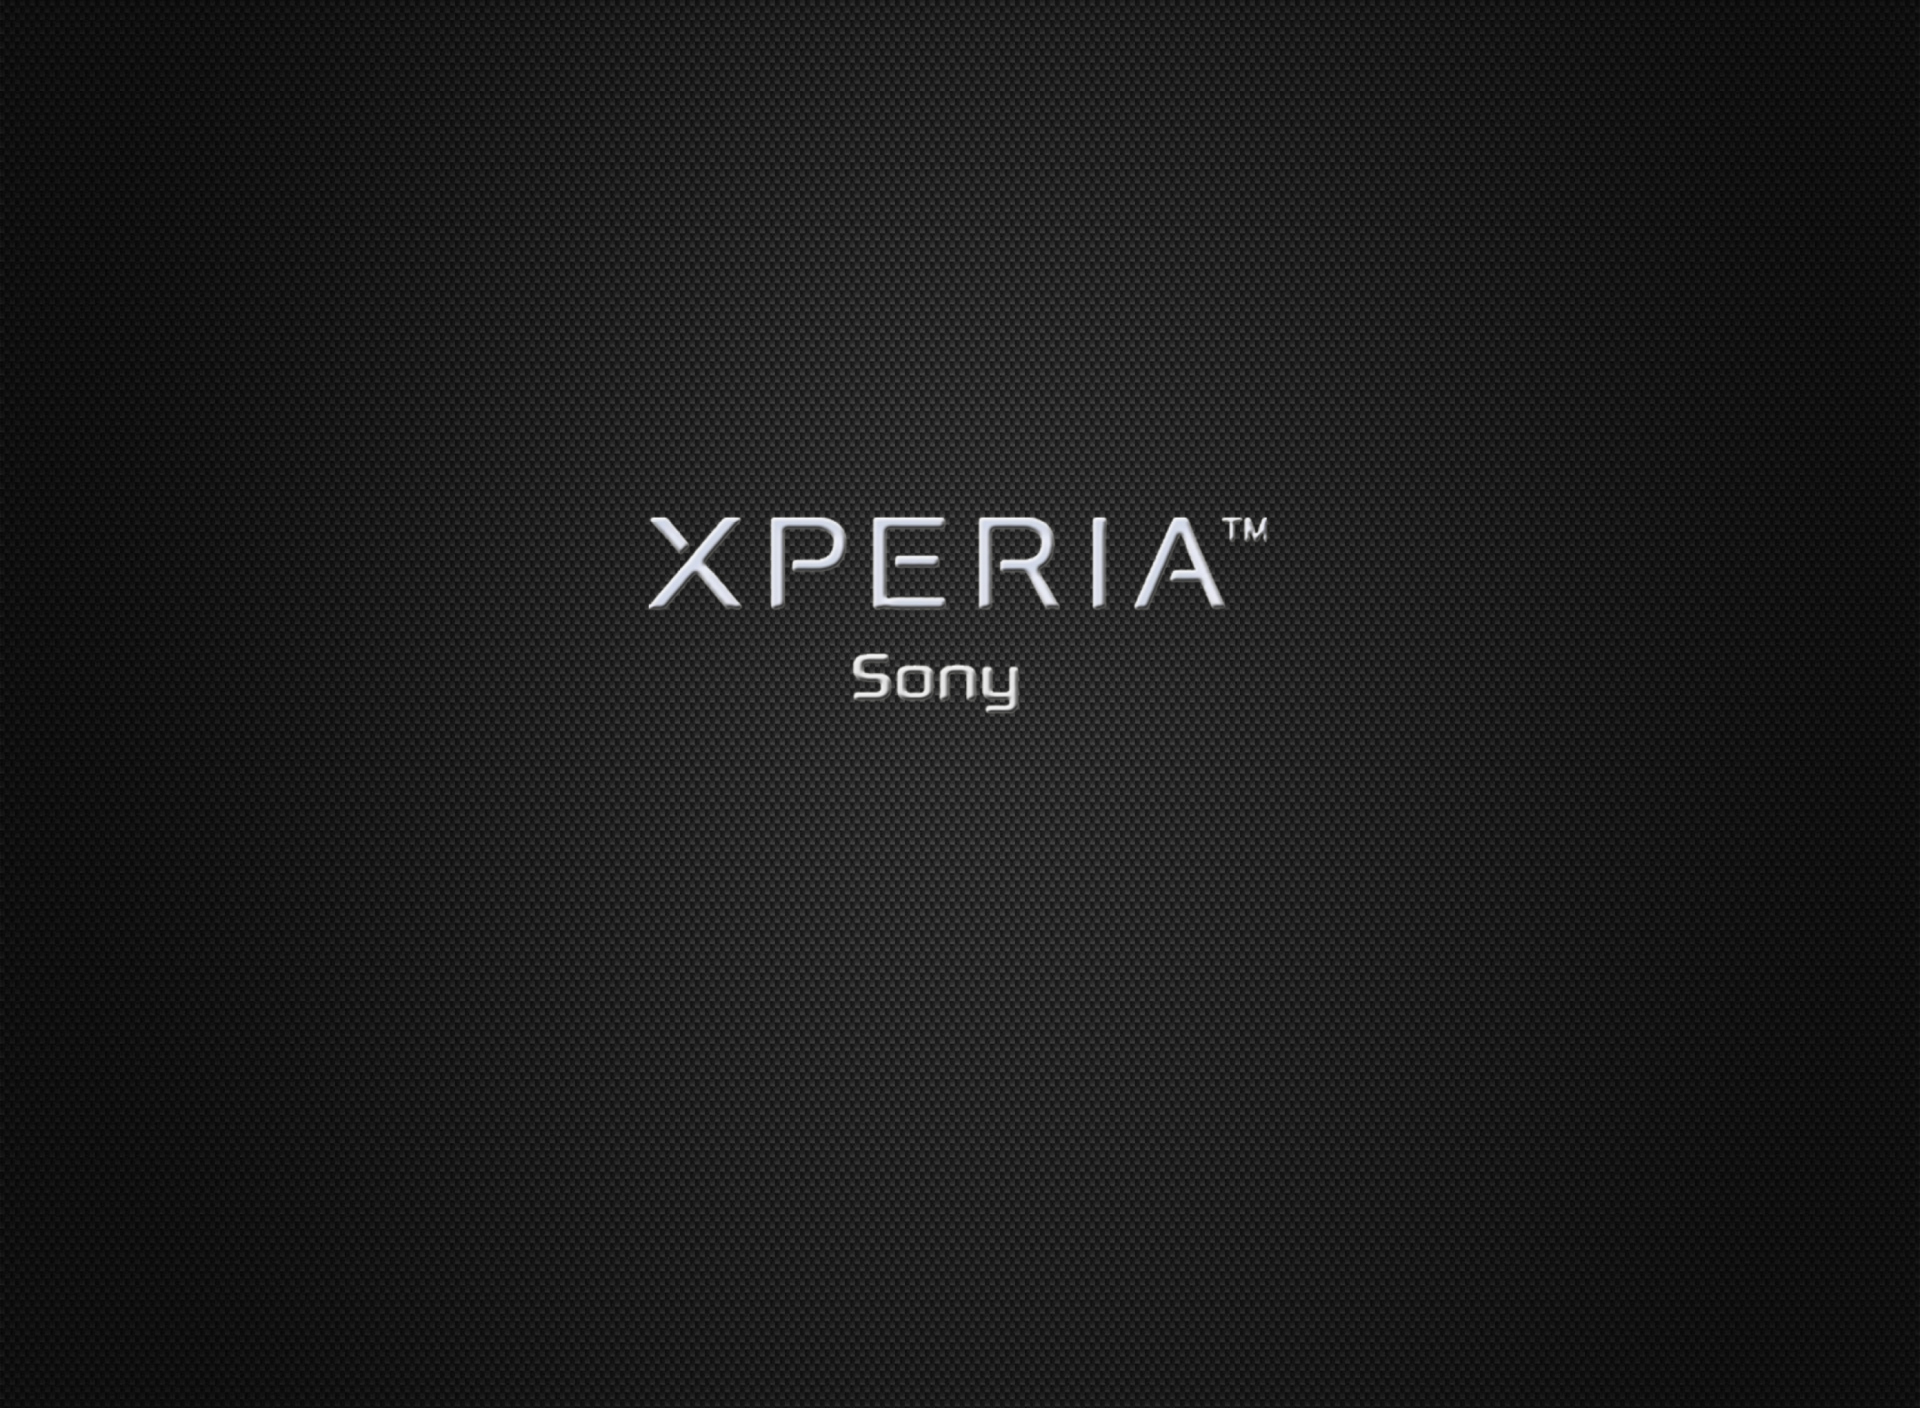 Sfondi Sony Xperia 1920x1408